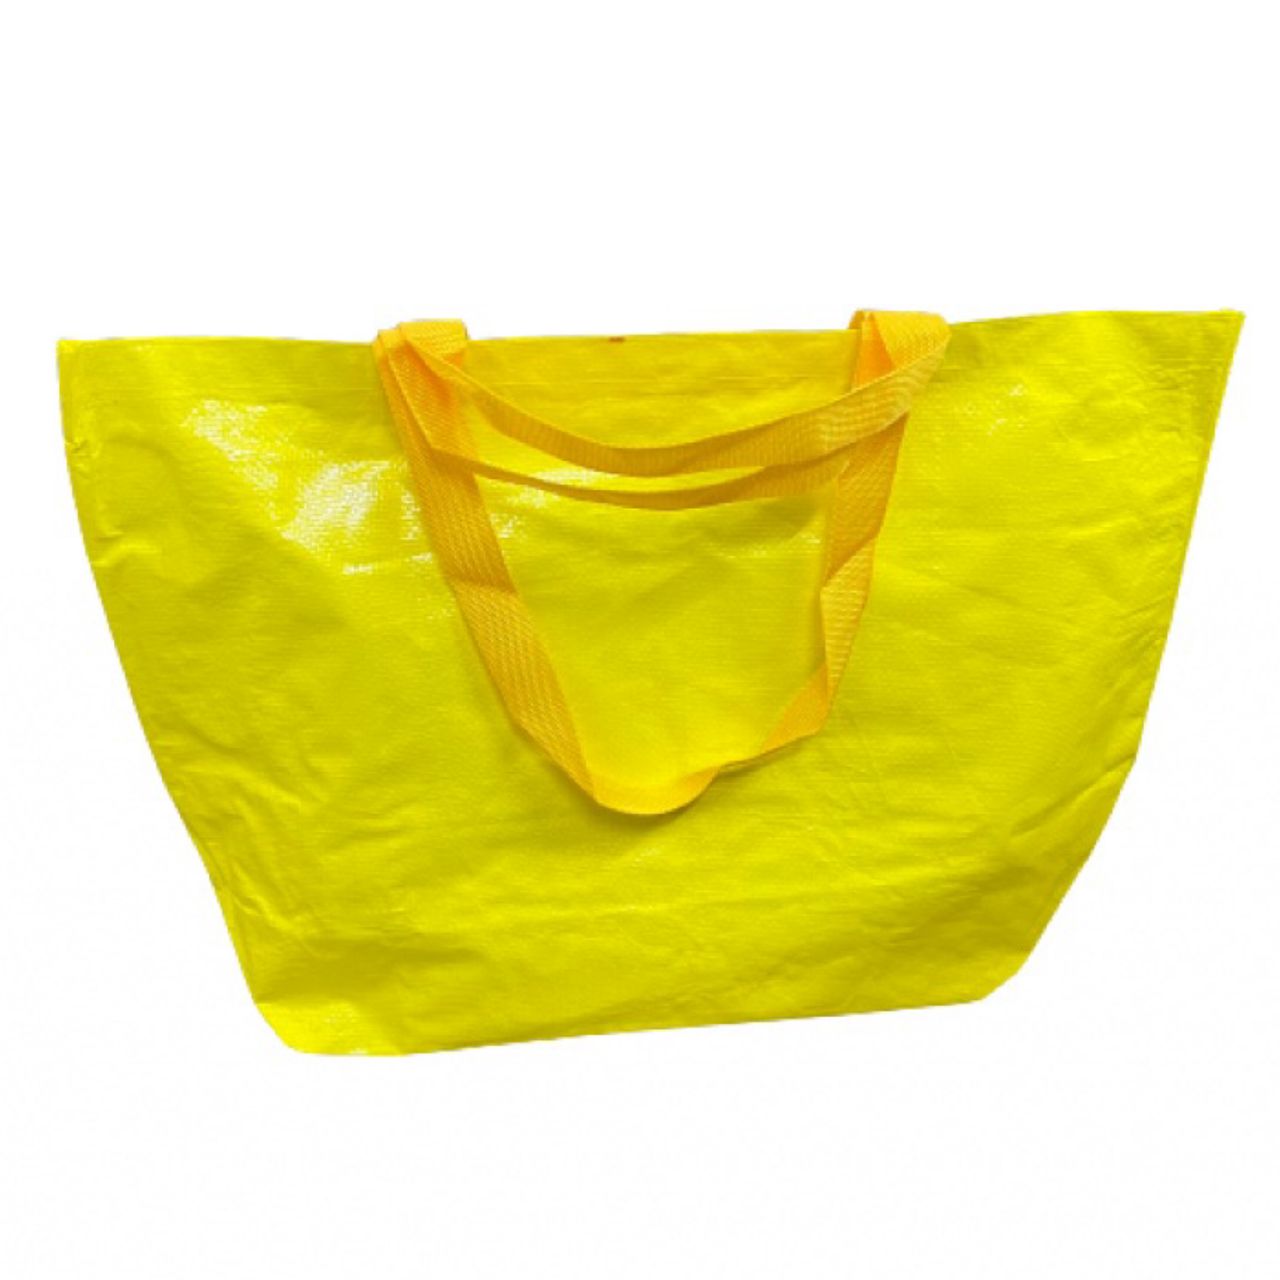 ரூ.2.50 முதல் | Cheapest Jute Bags,Cotton Bags in Tamilnadu | Jute Bags  Wholesale Market - YouTube